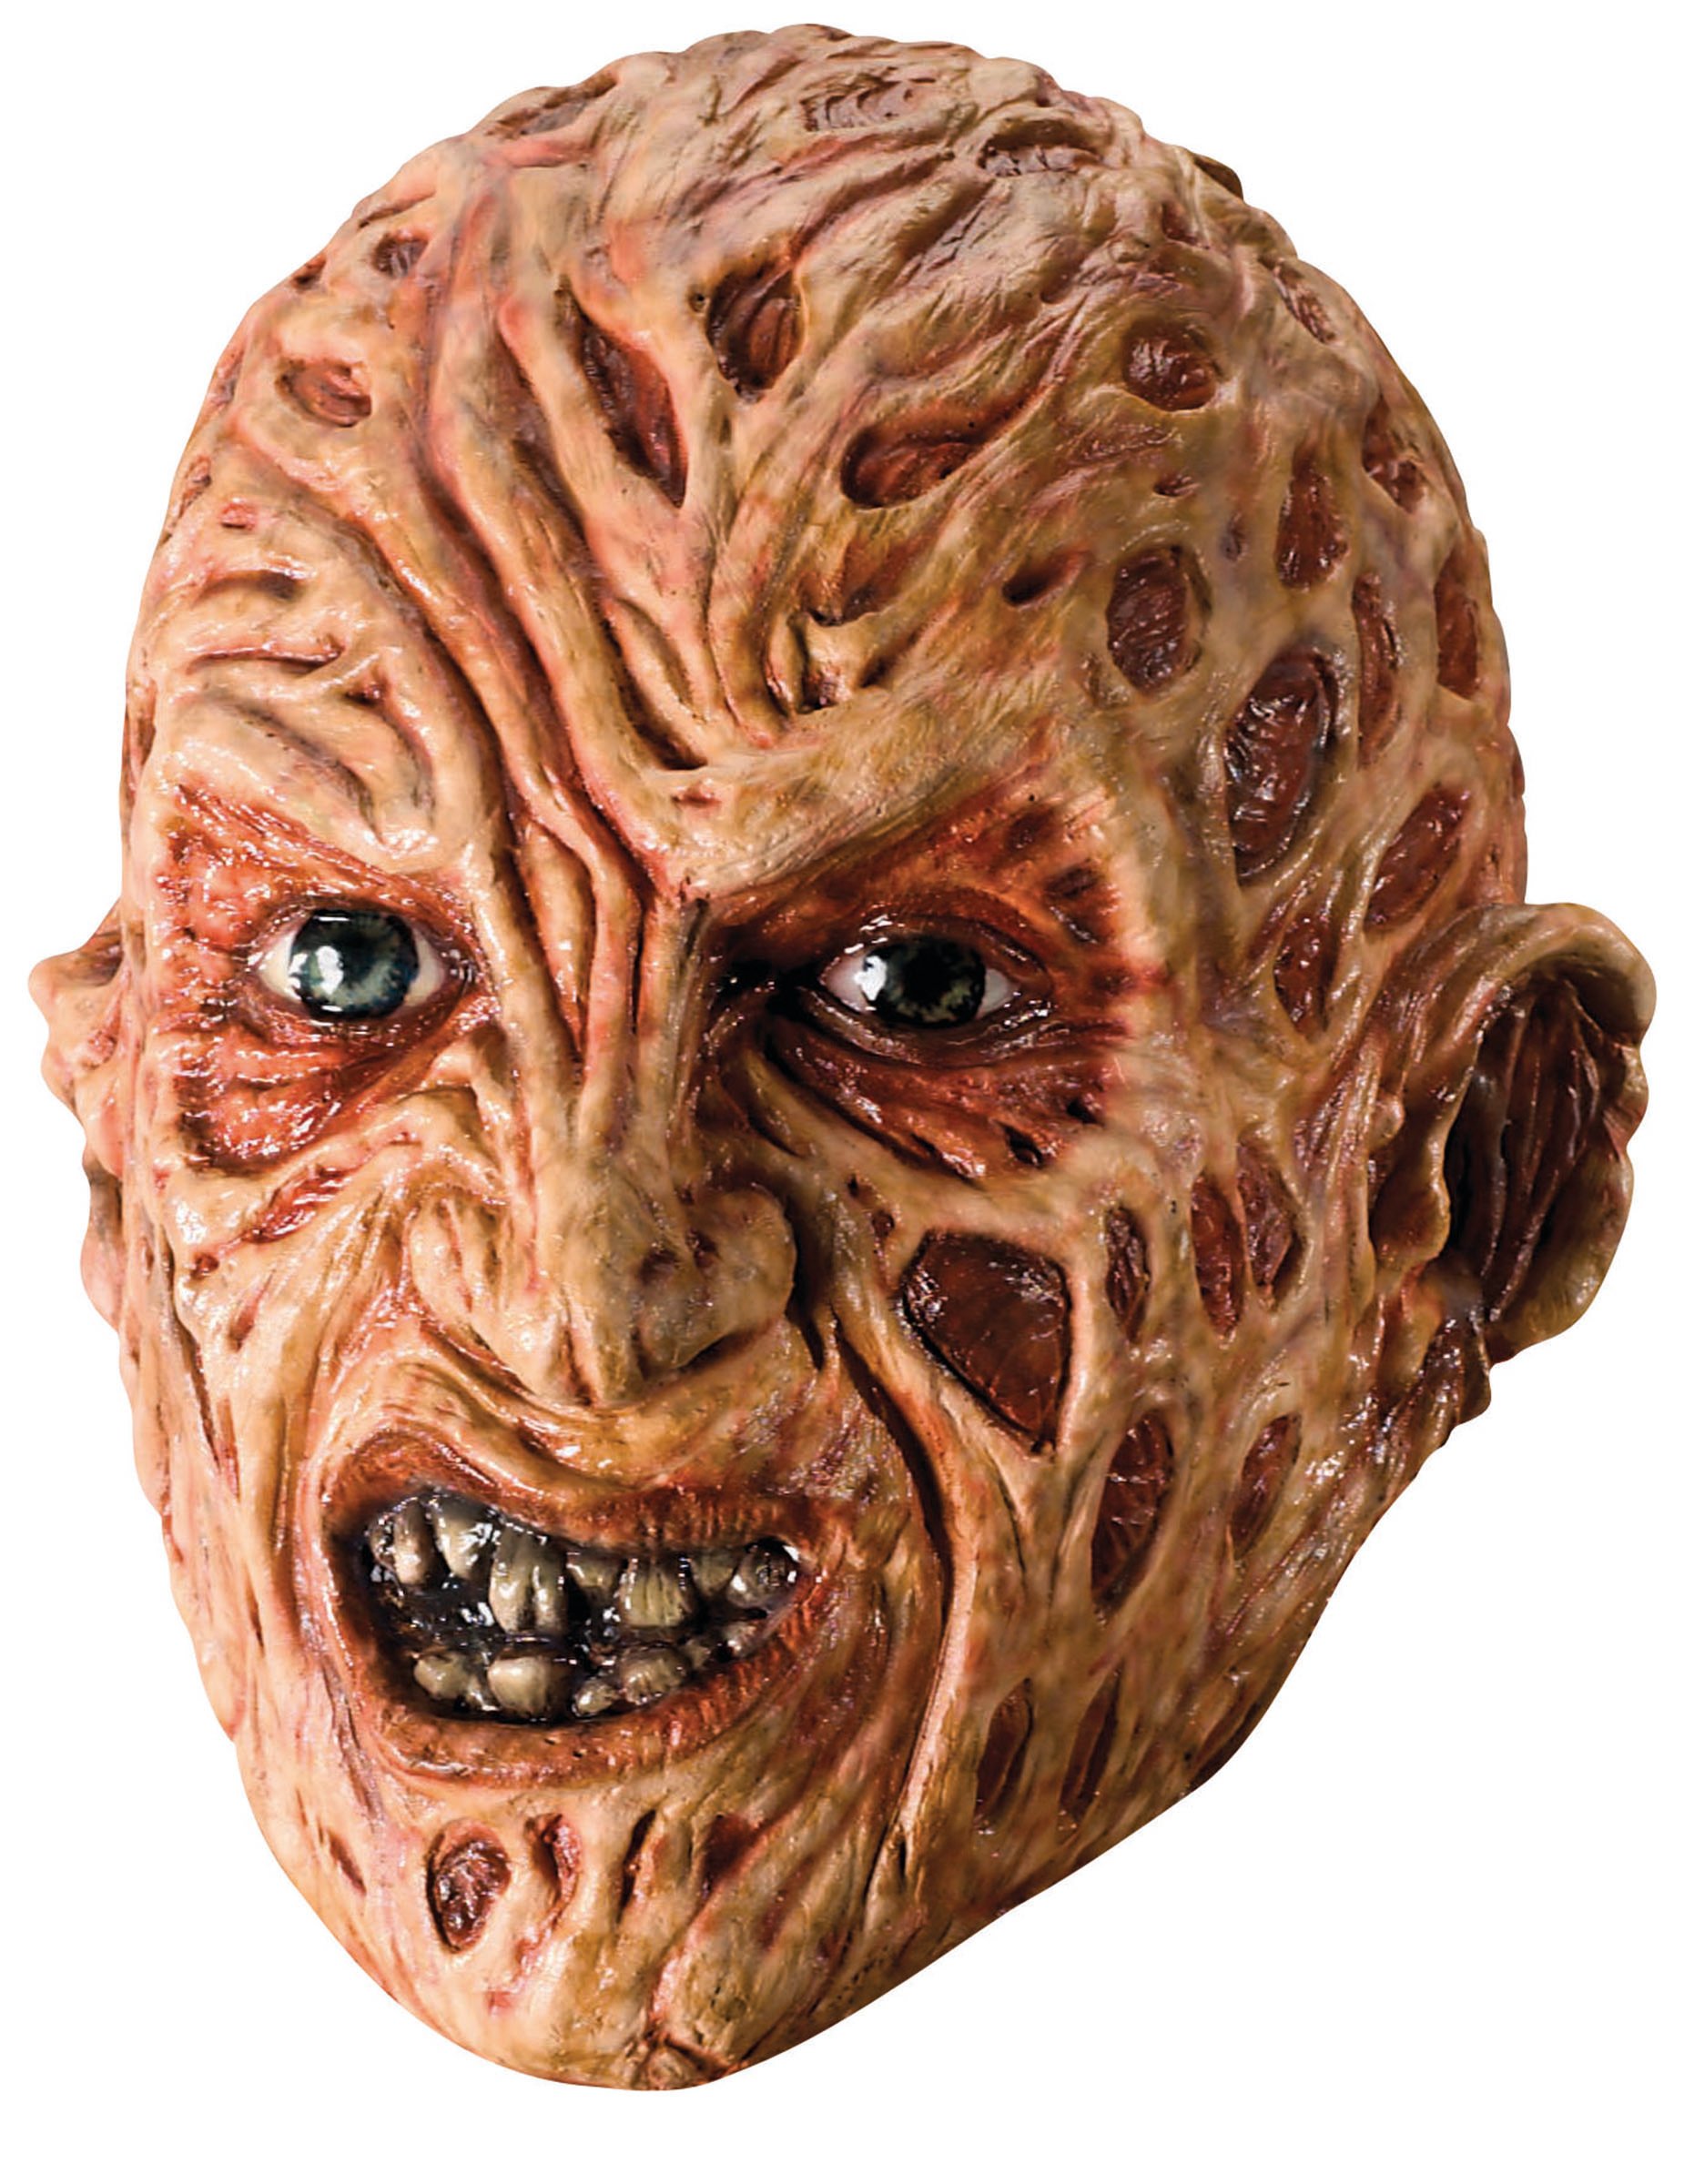 Freddy Krueger Halloween-Maske Lizenzartikel beige-rot von RUBIES FRANCE